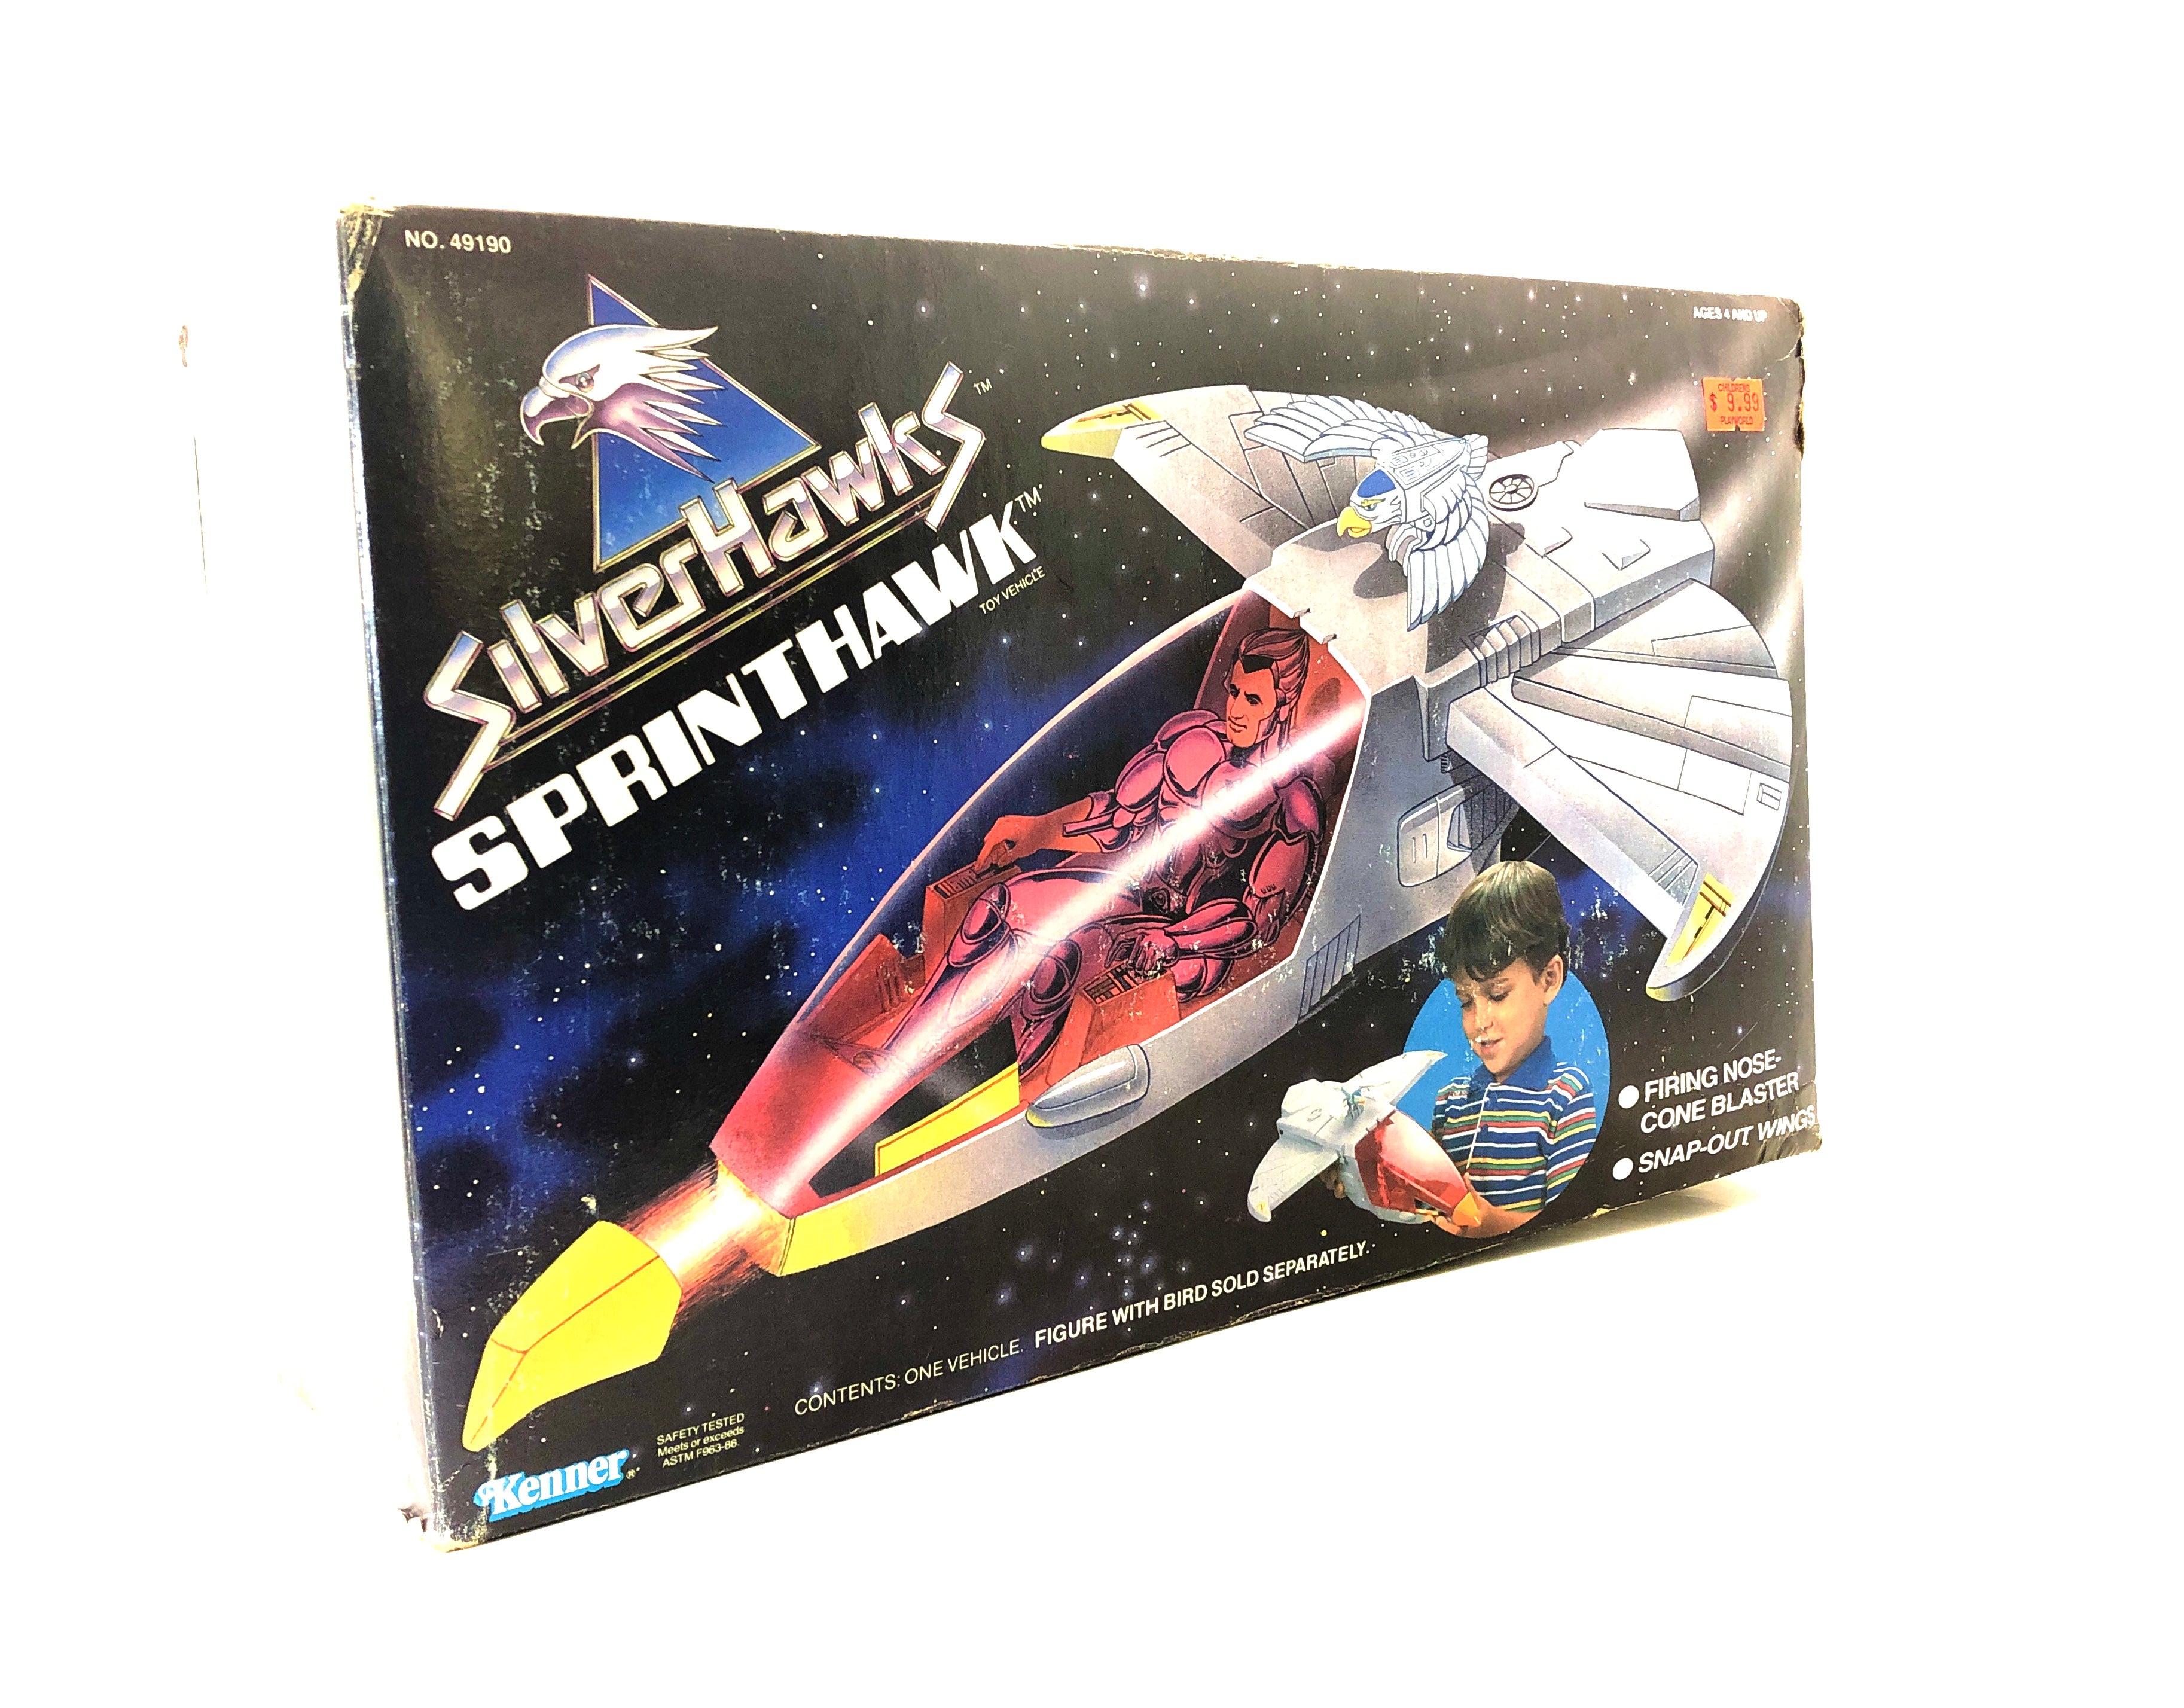 Silverhawks: Sprinthawk (Kenner, 1987)